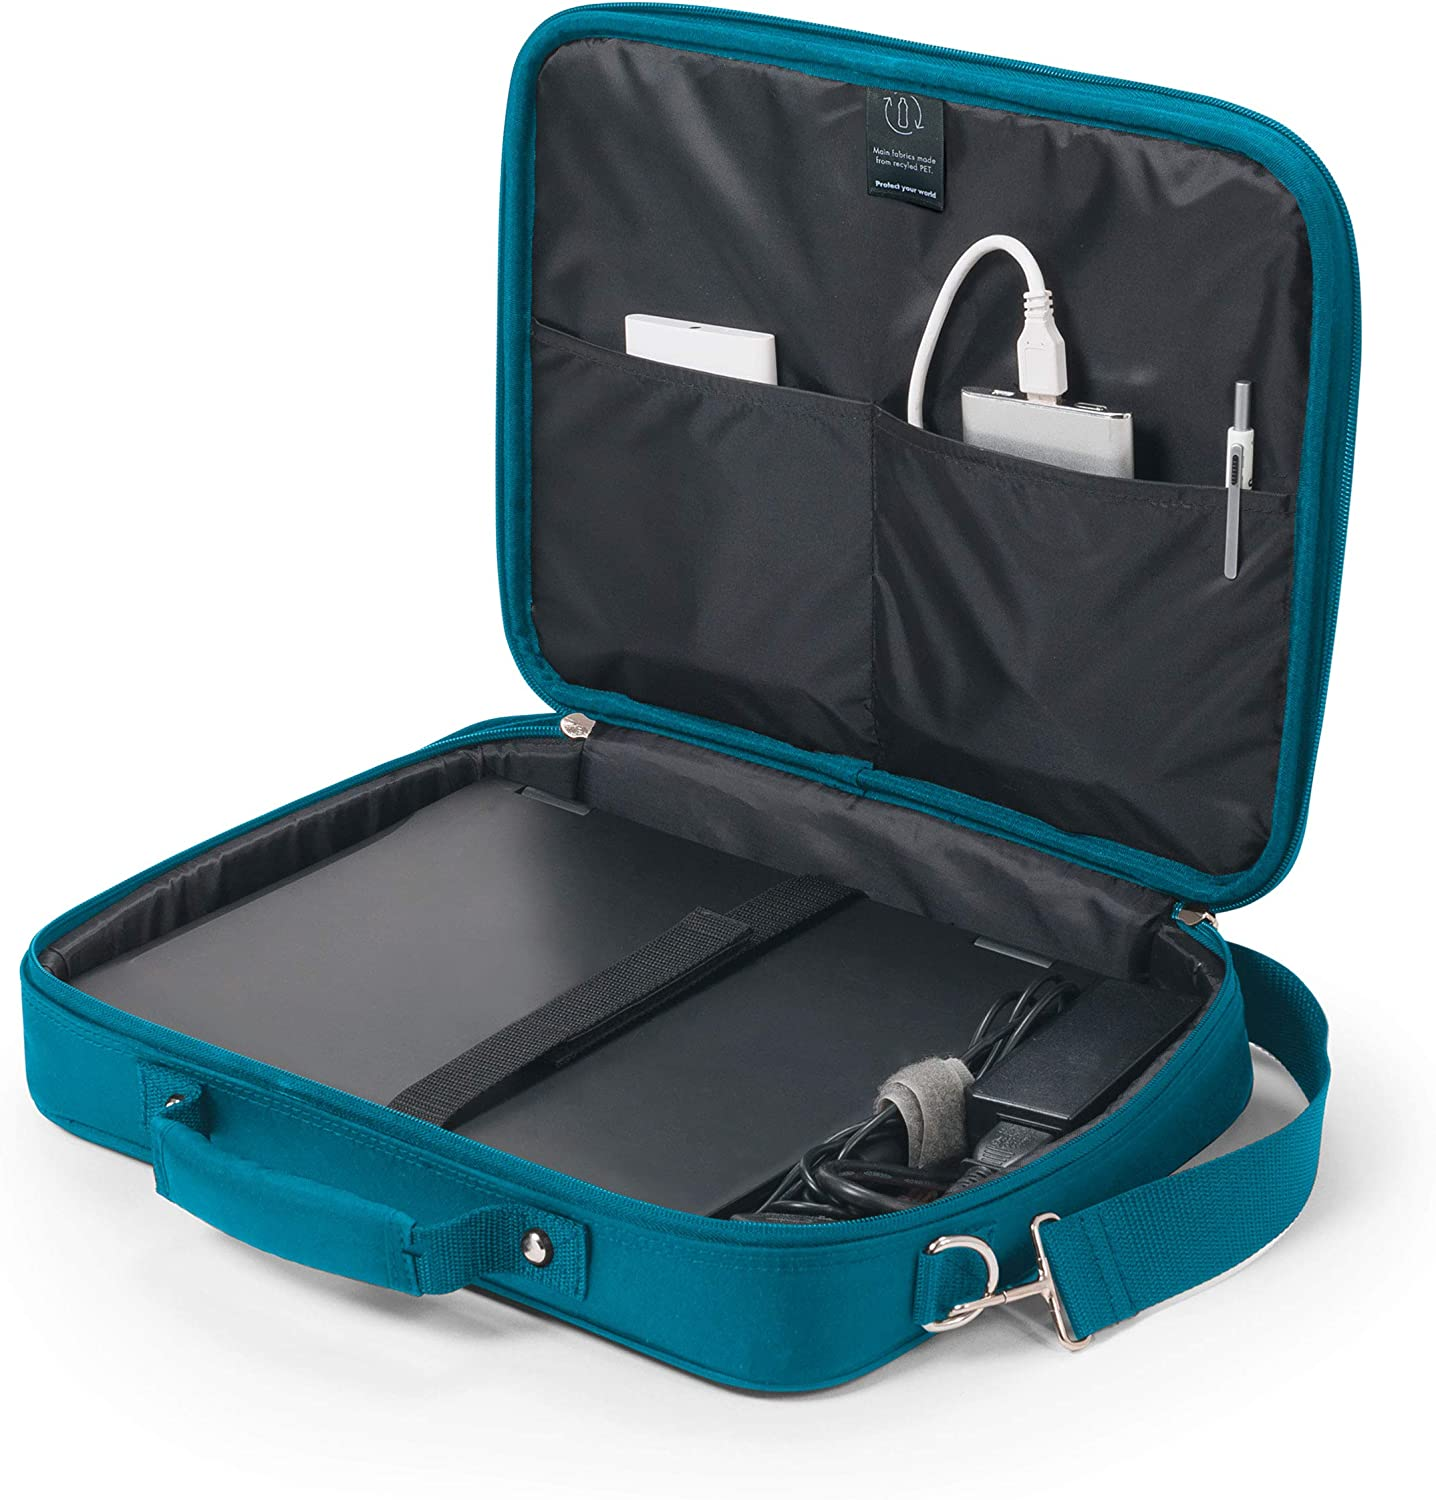 DICOTA Eco Multi Universal BASE für Notebooktasche Blau Aktentasche PET, recycled